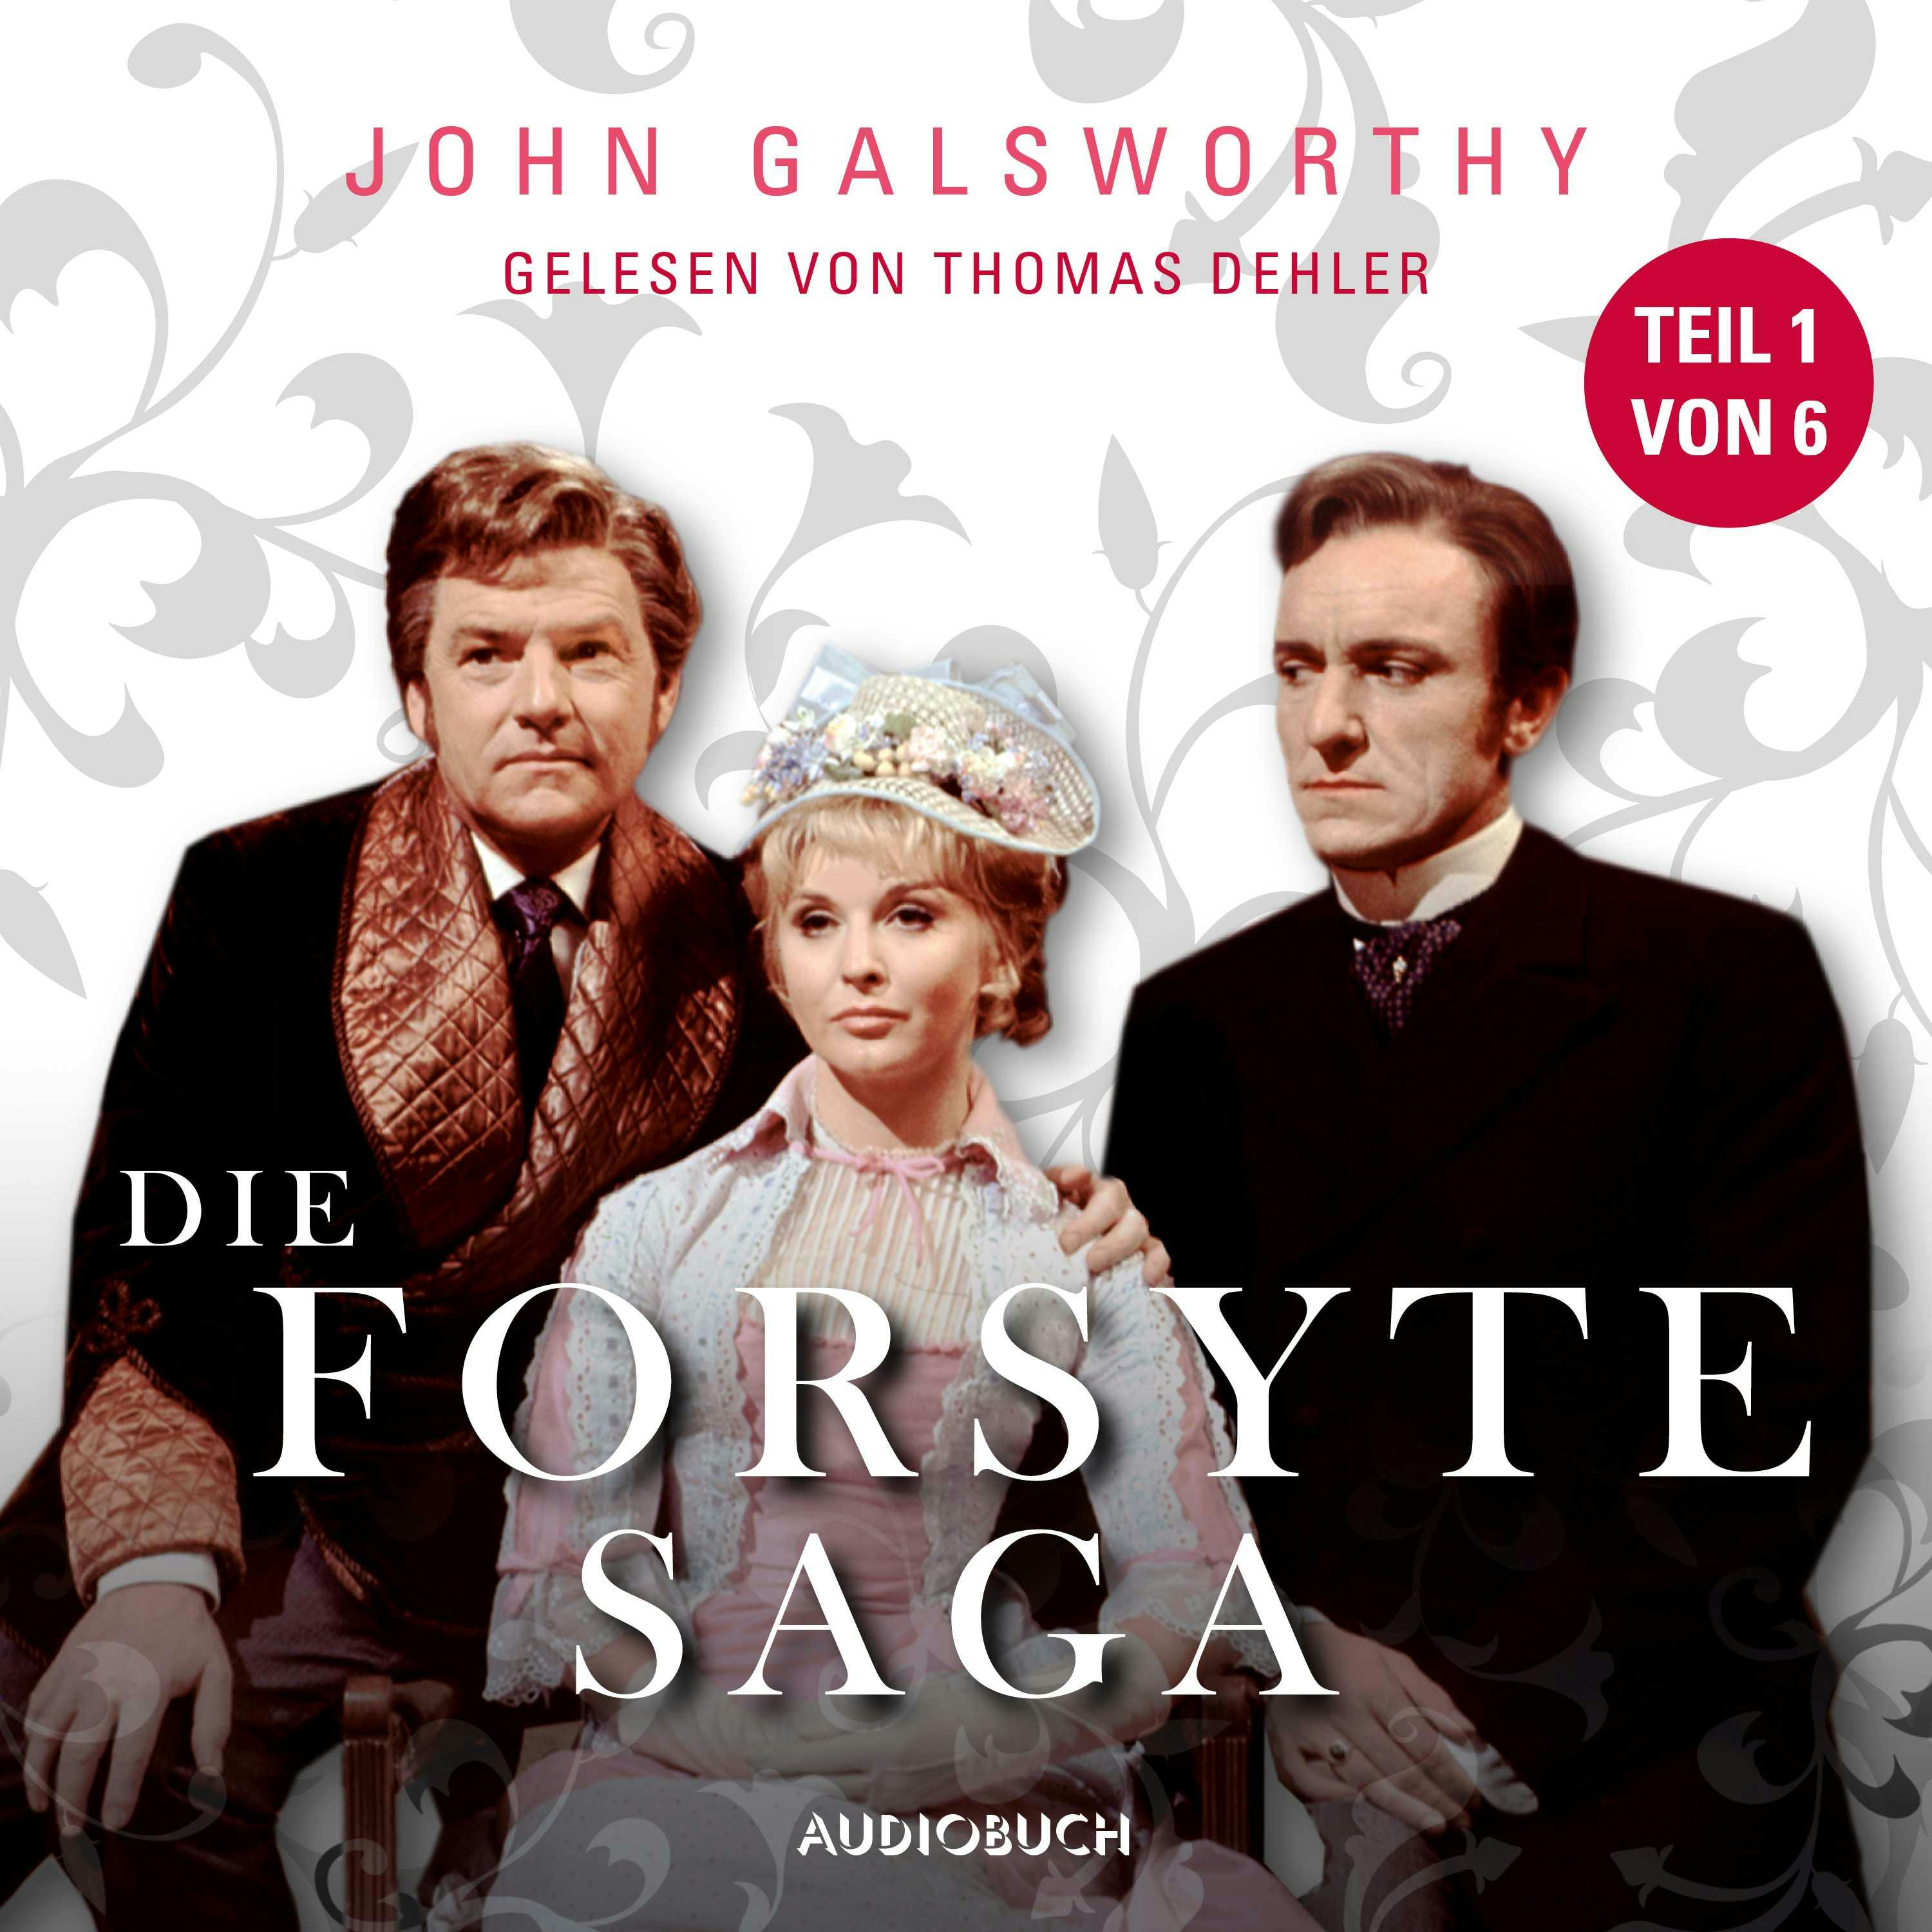 Die Forsyte Saga, Teil 1 von 6 (Ungekürzt) - John Galsworthy